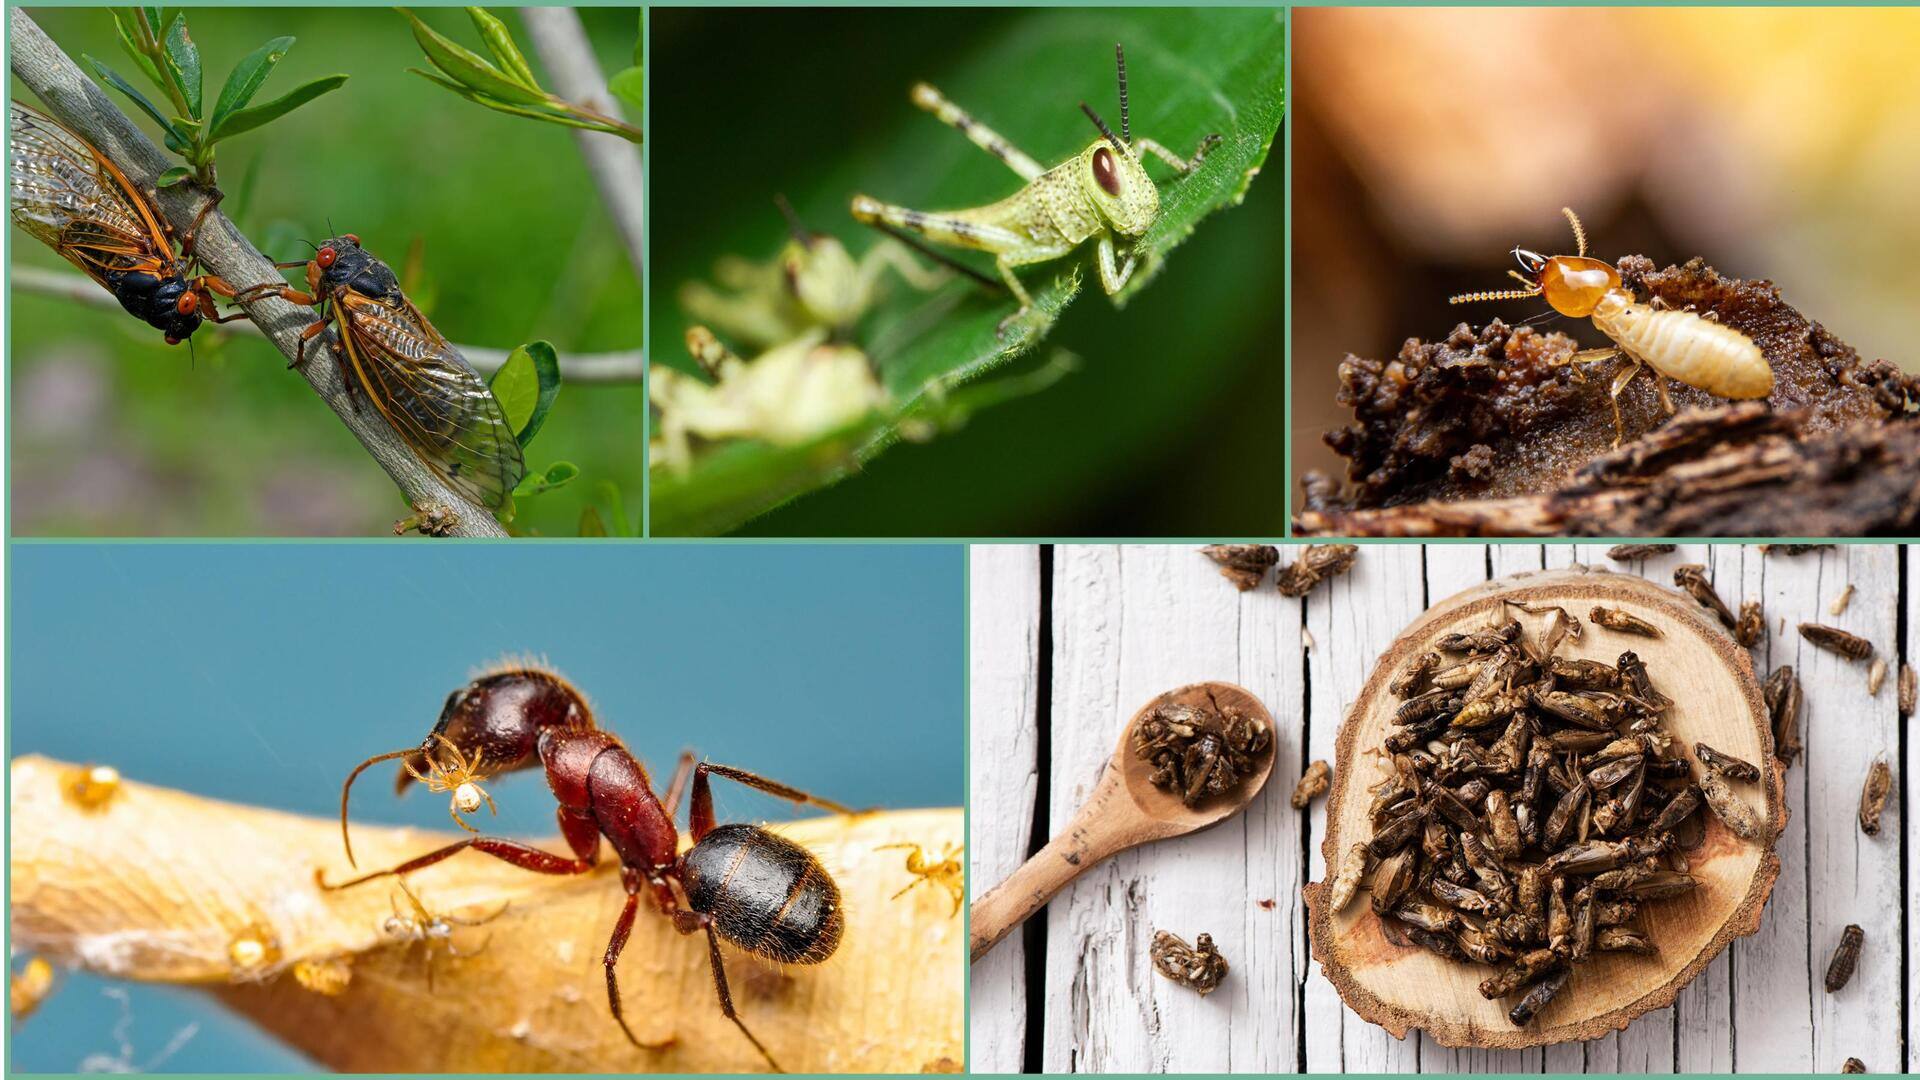 ये 5 कीड़ें पोषक तत्वों से होते हैं भरपूर, लोग करते हैं सेवन